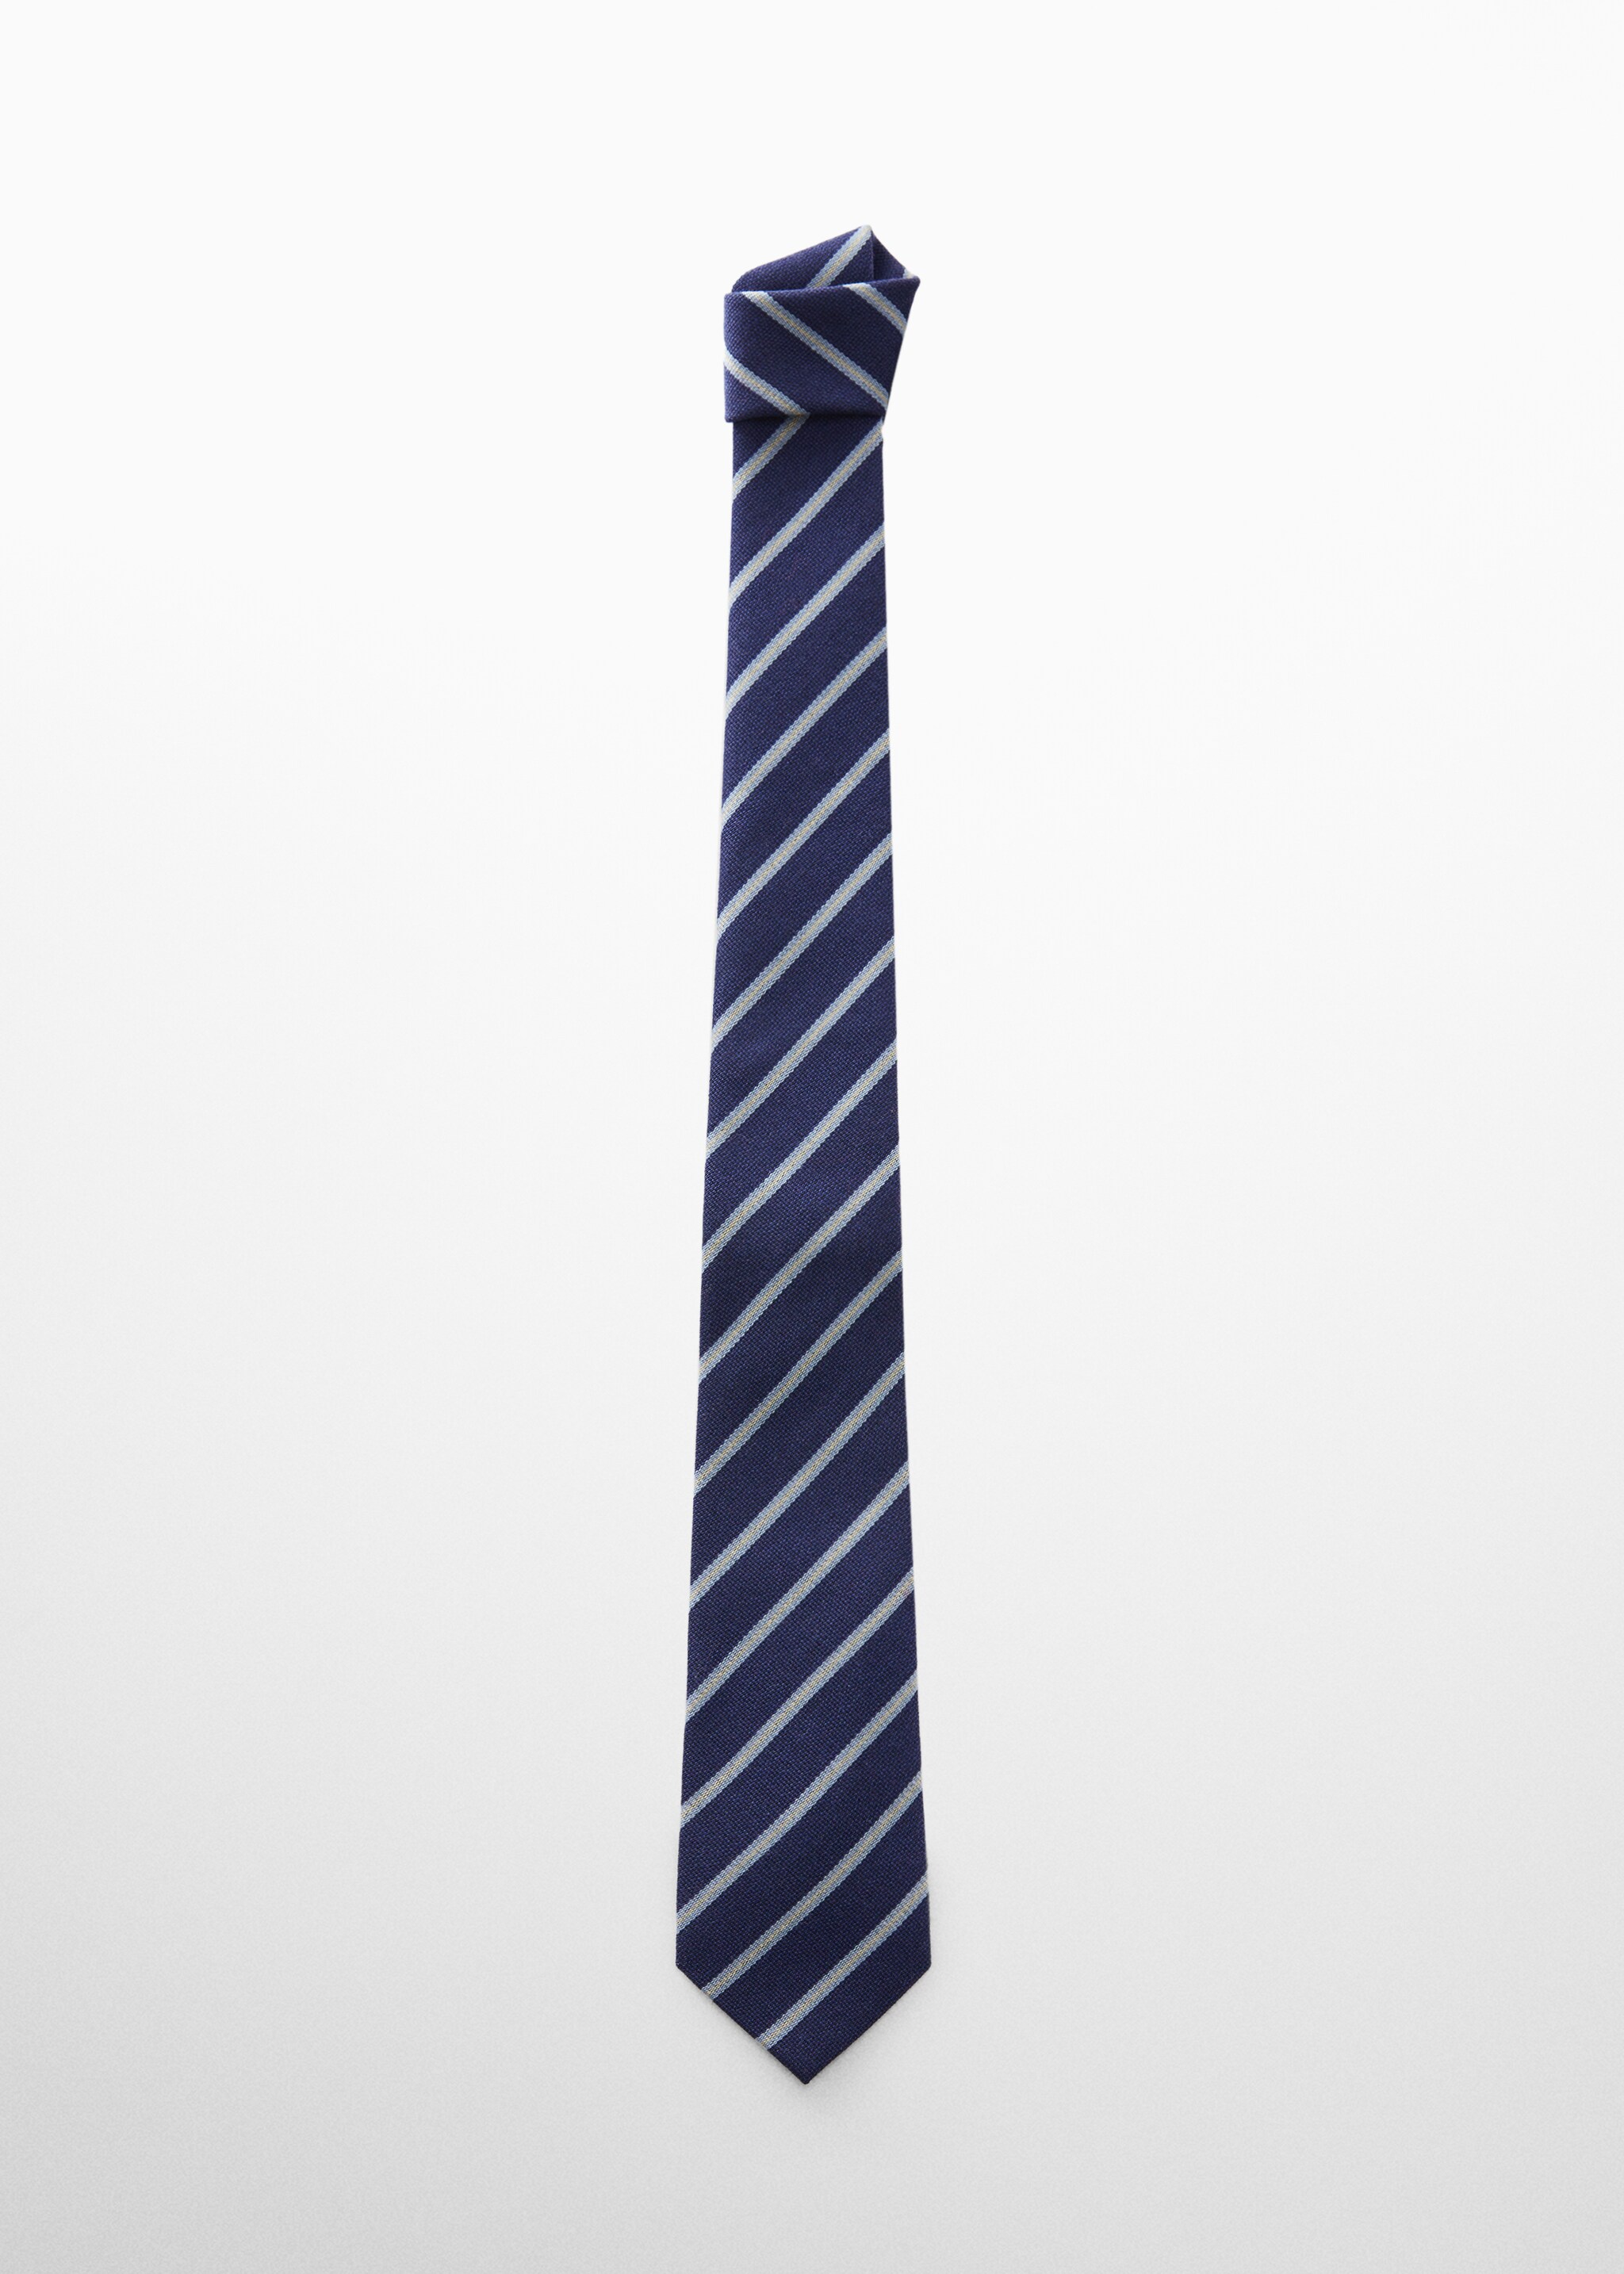 Cravatta righe misto lana - Articolo senza modello